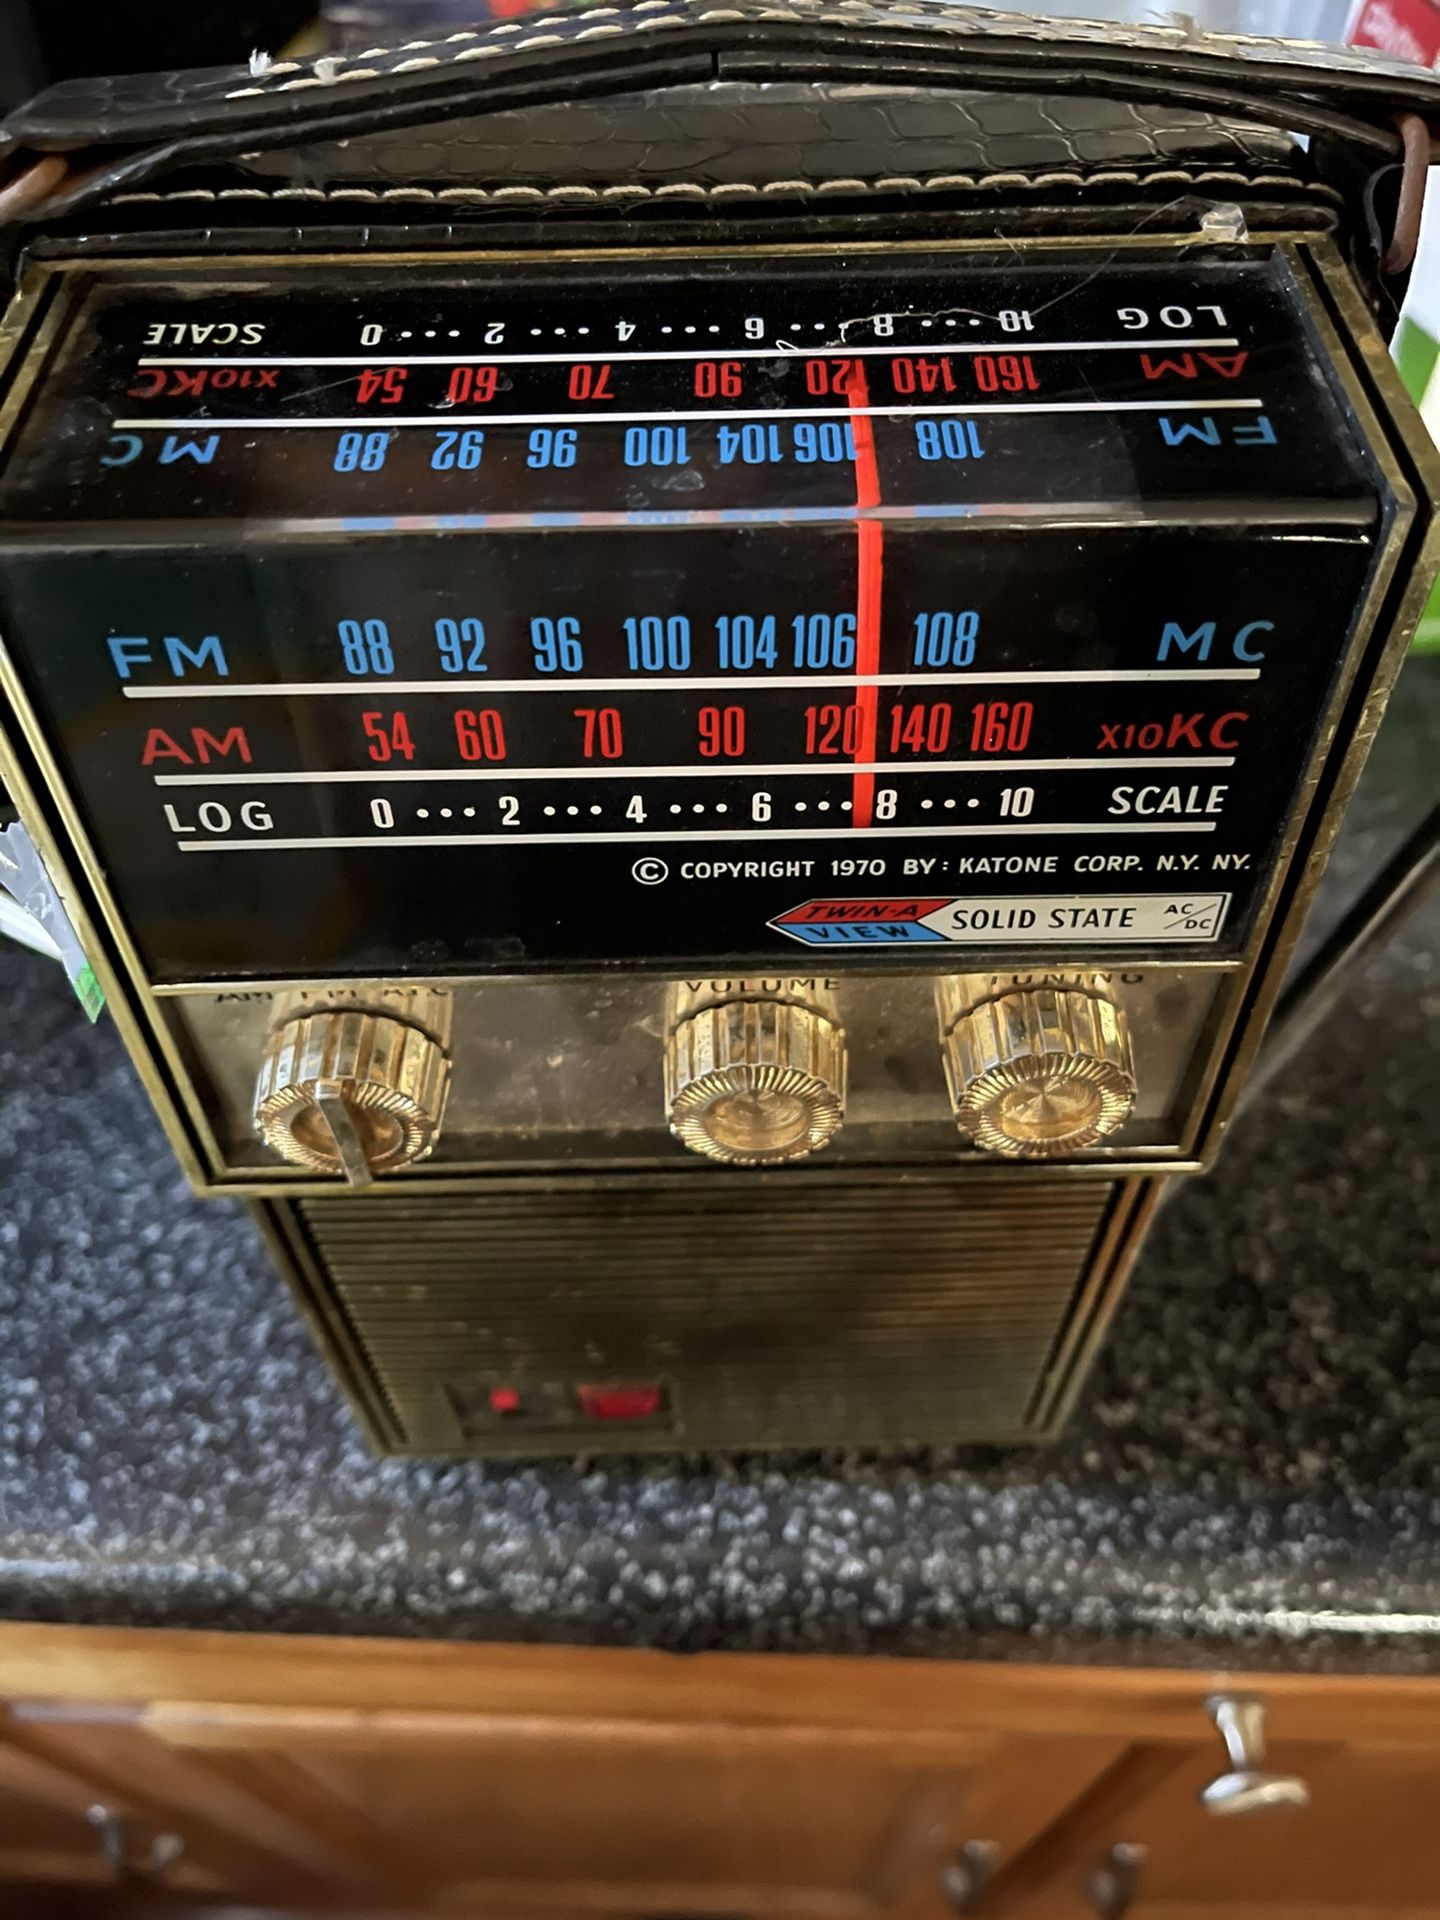 1970 katone vintage portable radio